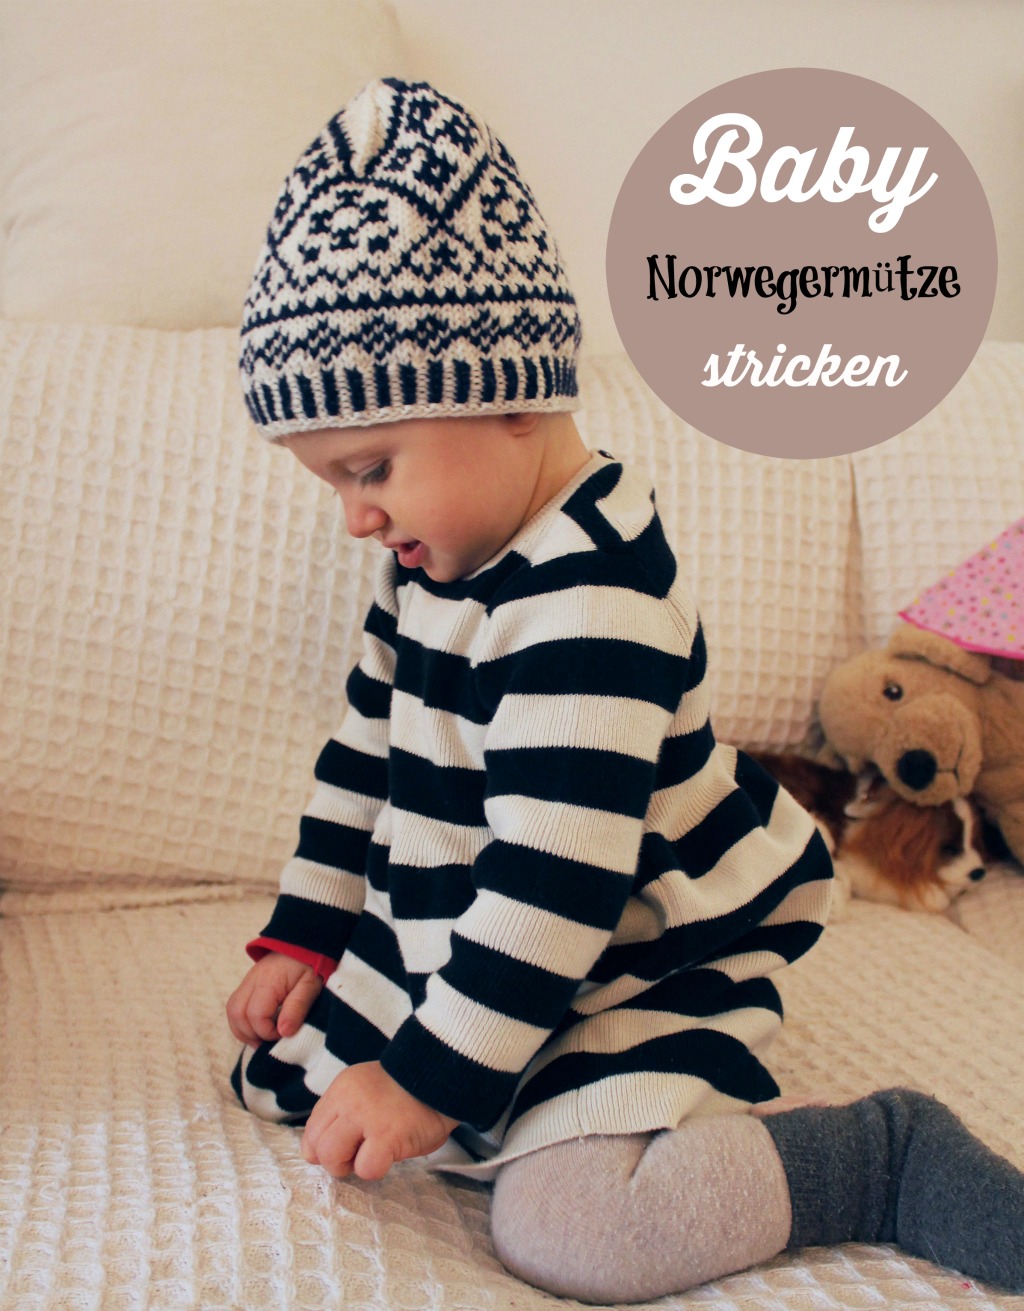 Baby Norwegermütze stricken bei schoenstricken.de